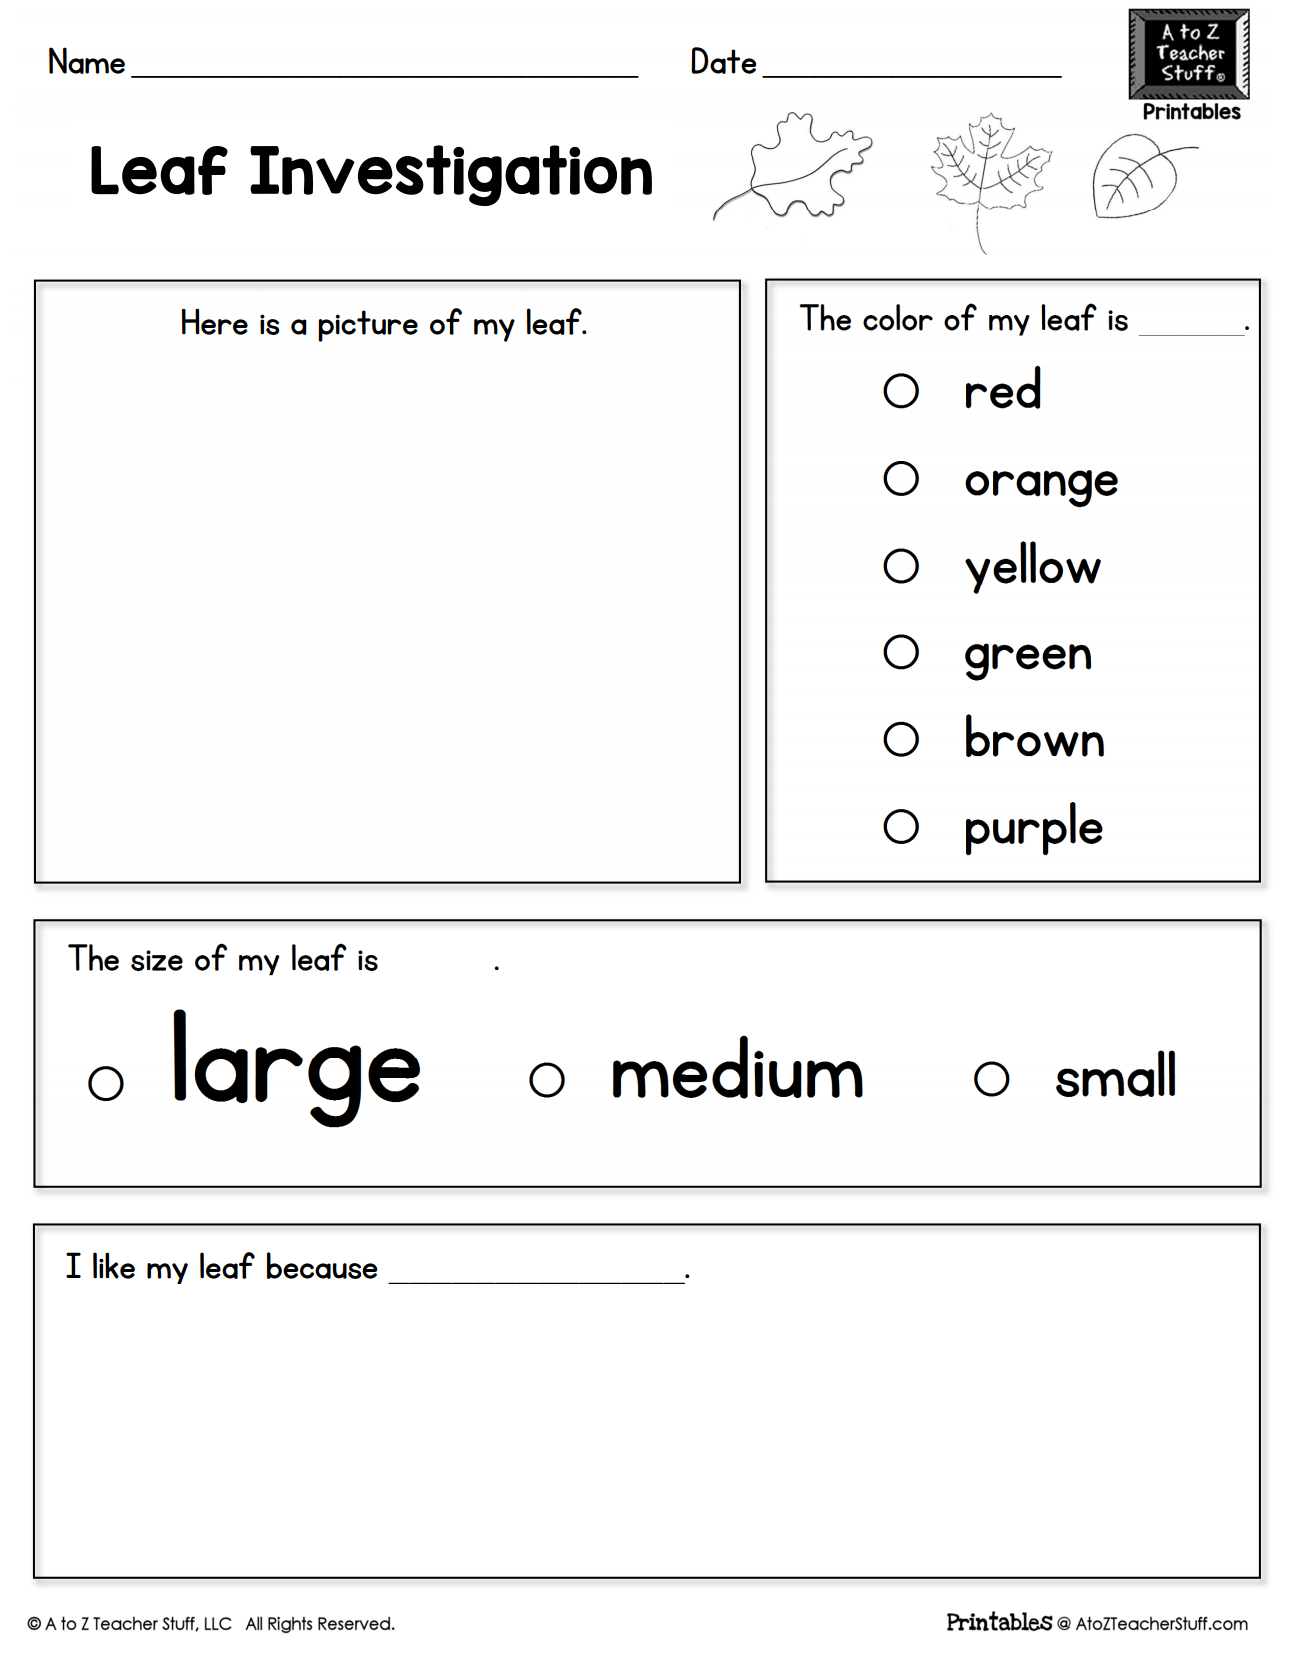 Leaf Investigation Printable Worksheet A To Z Teacher Stuff